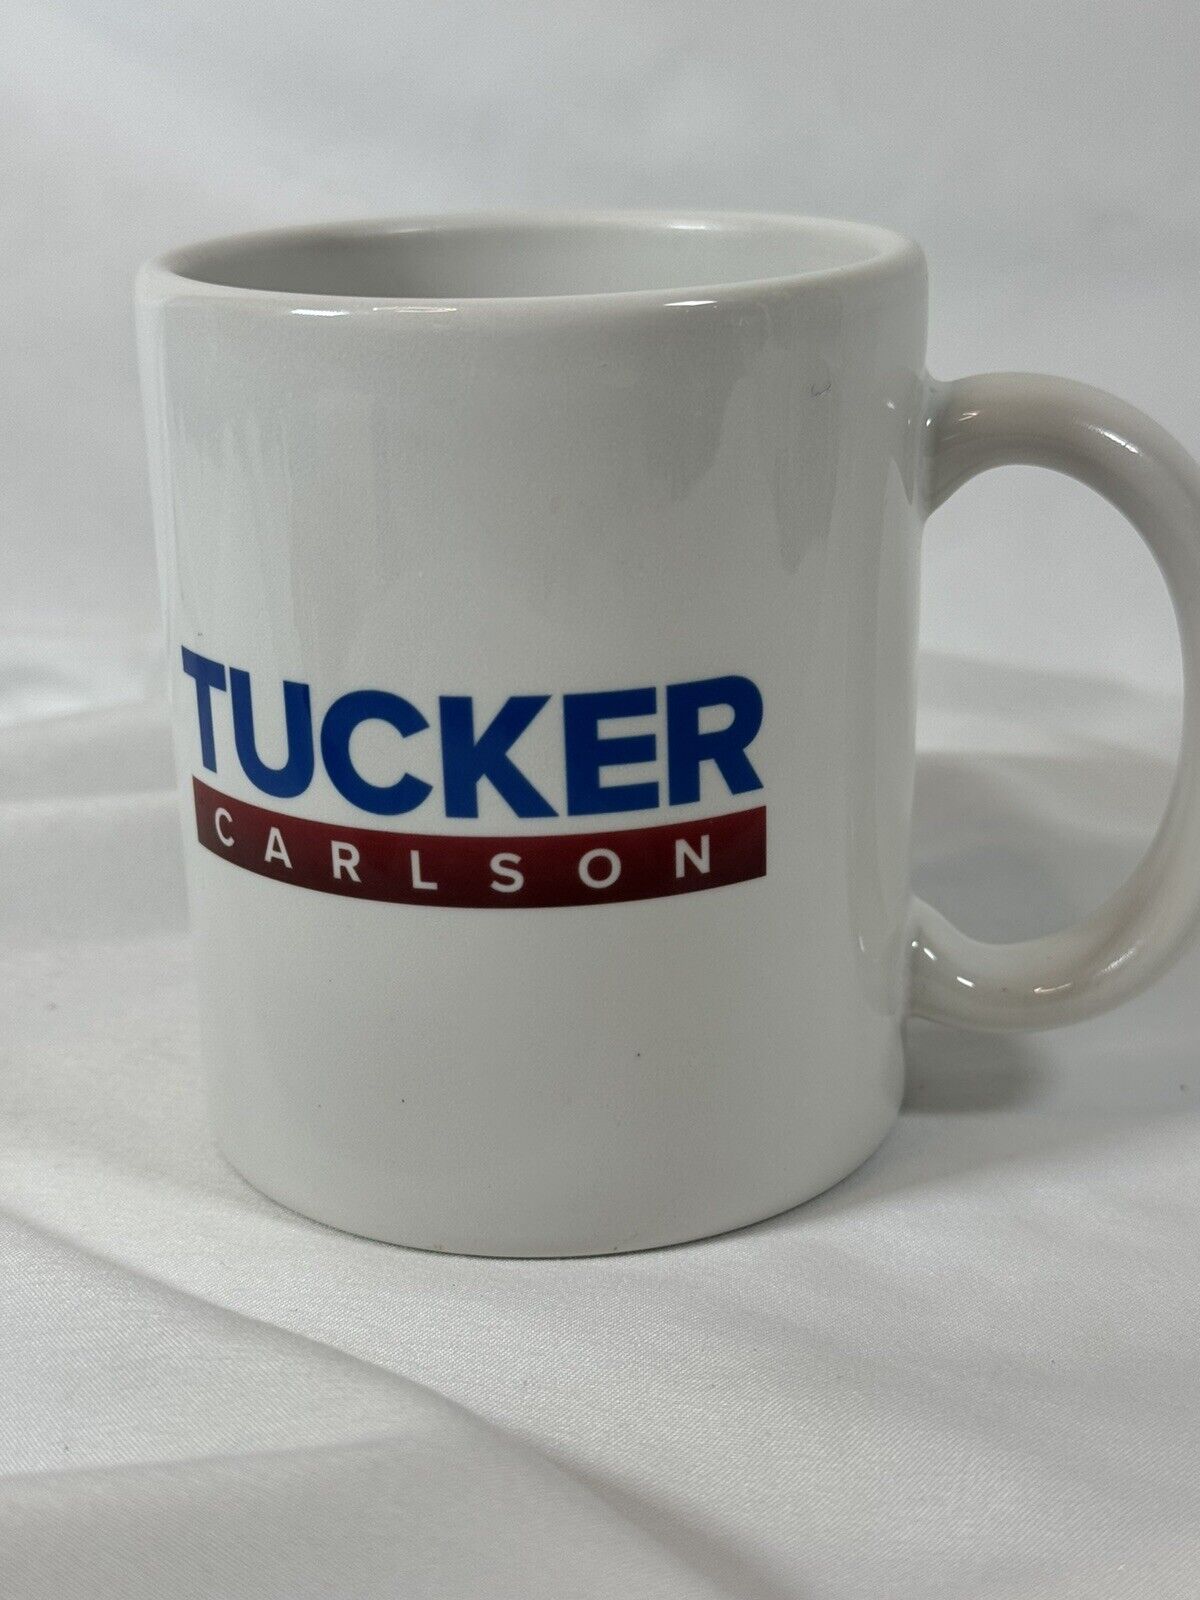 Tucker Carlson Mug Funny Political Patriotic Michael Avenatti Prison Made In USA